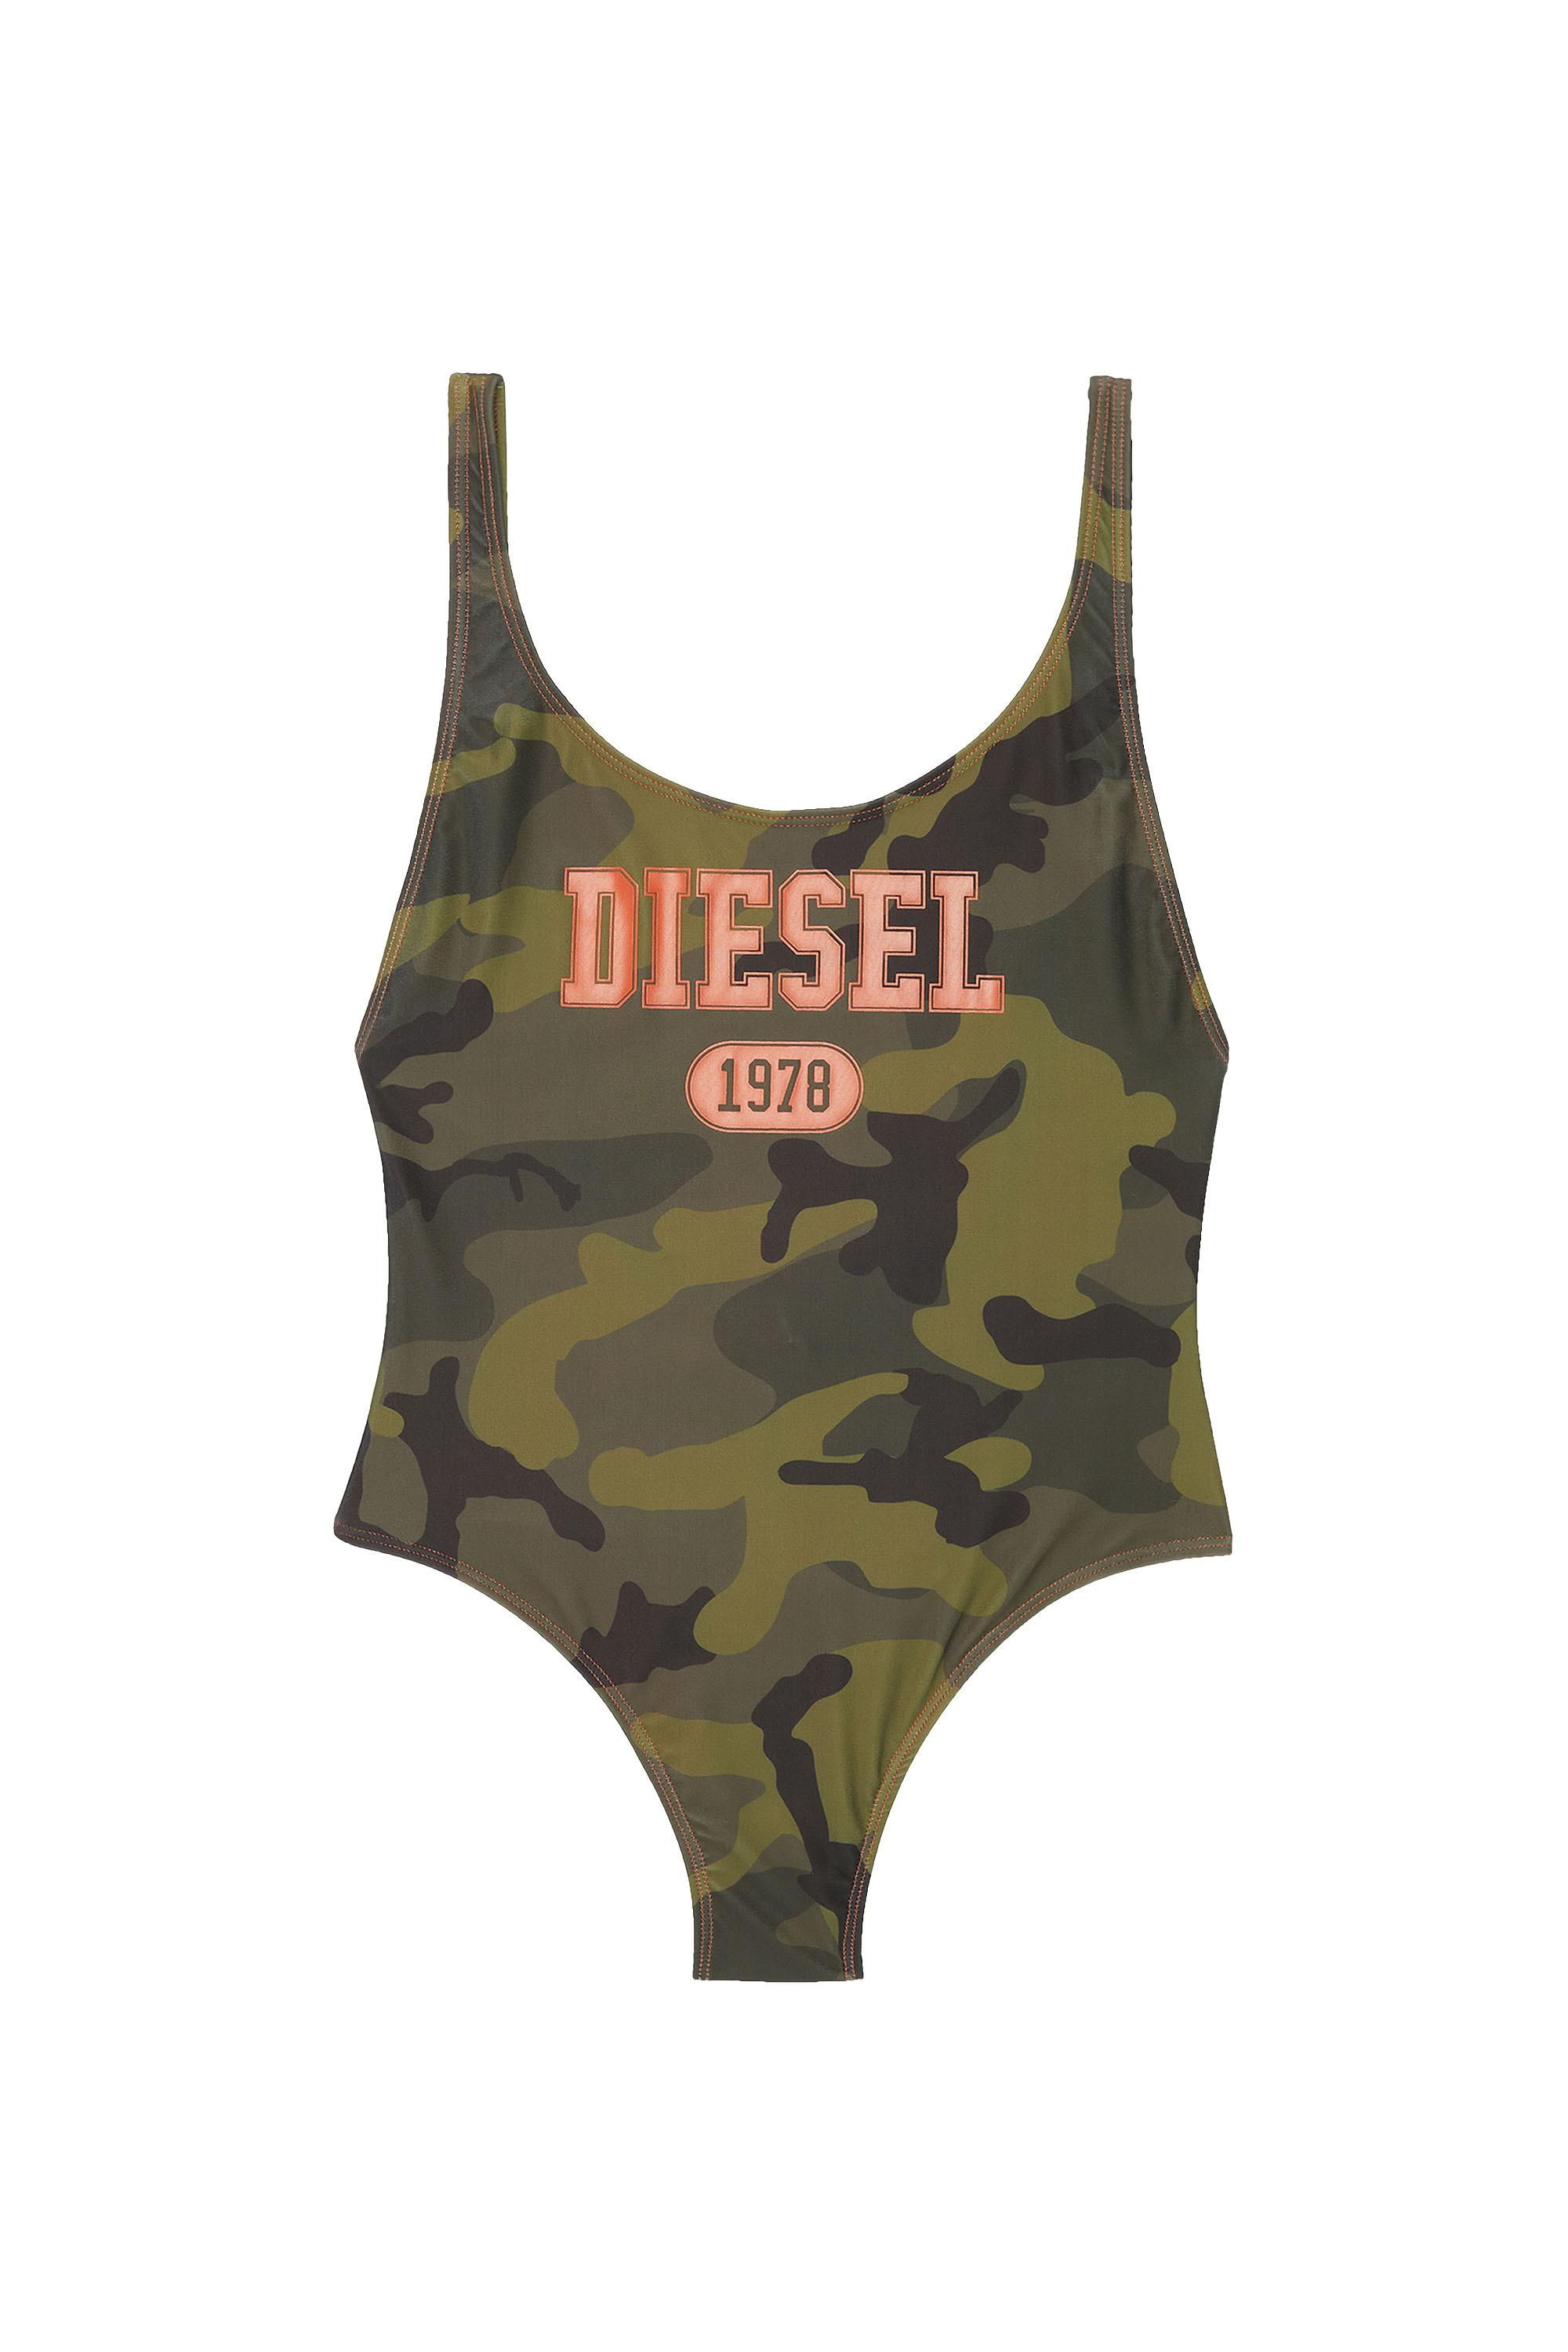 Diesel - BFSW-SLIA, Armeegrün - Image 2